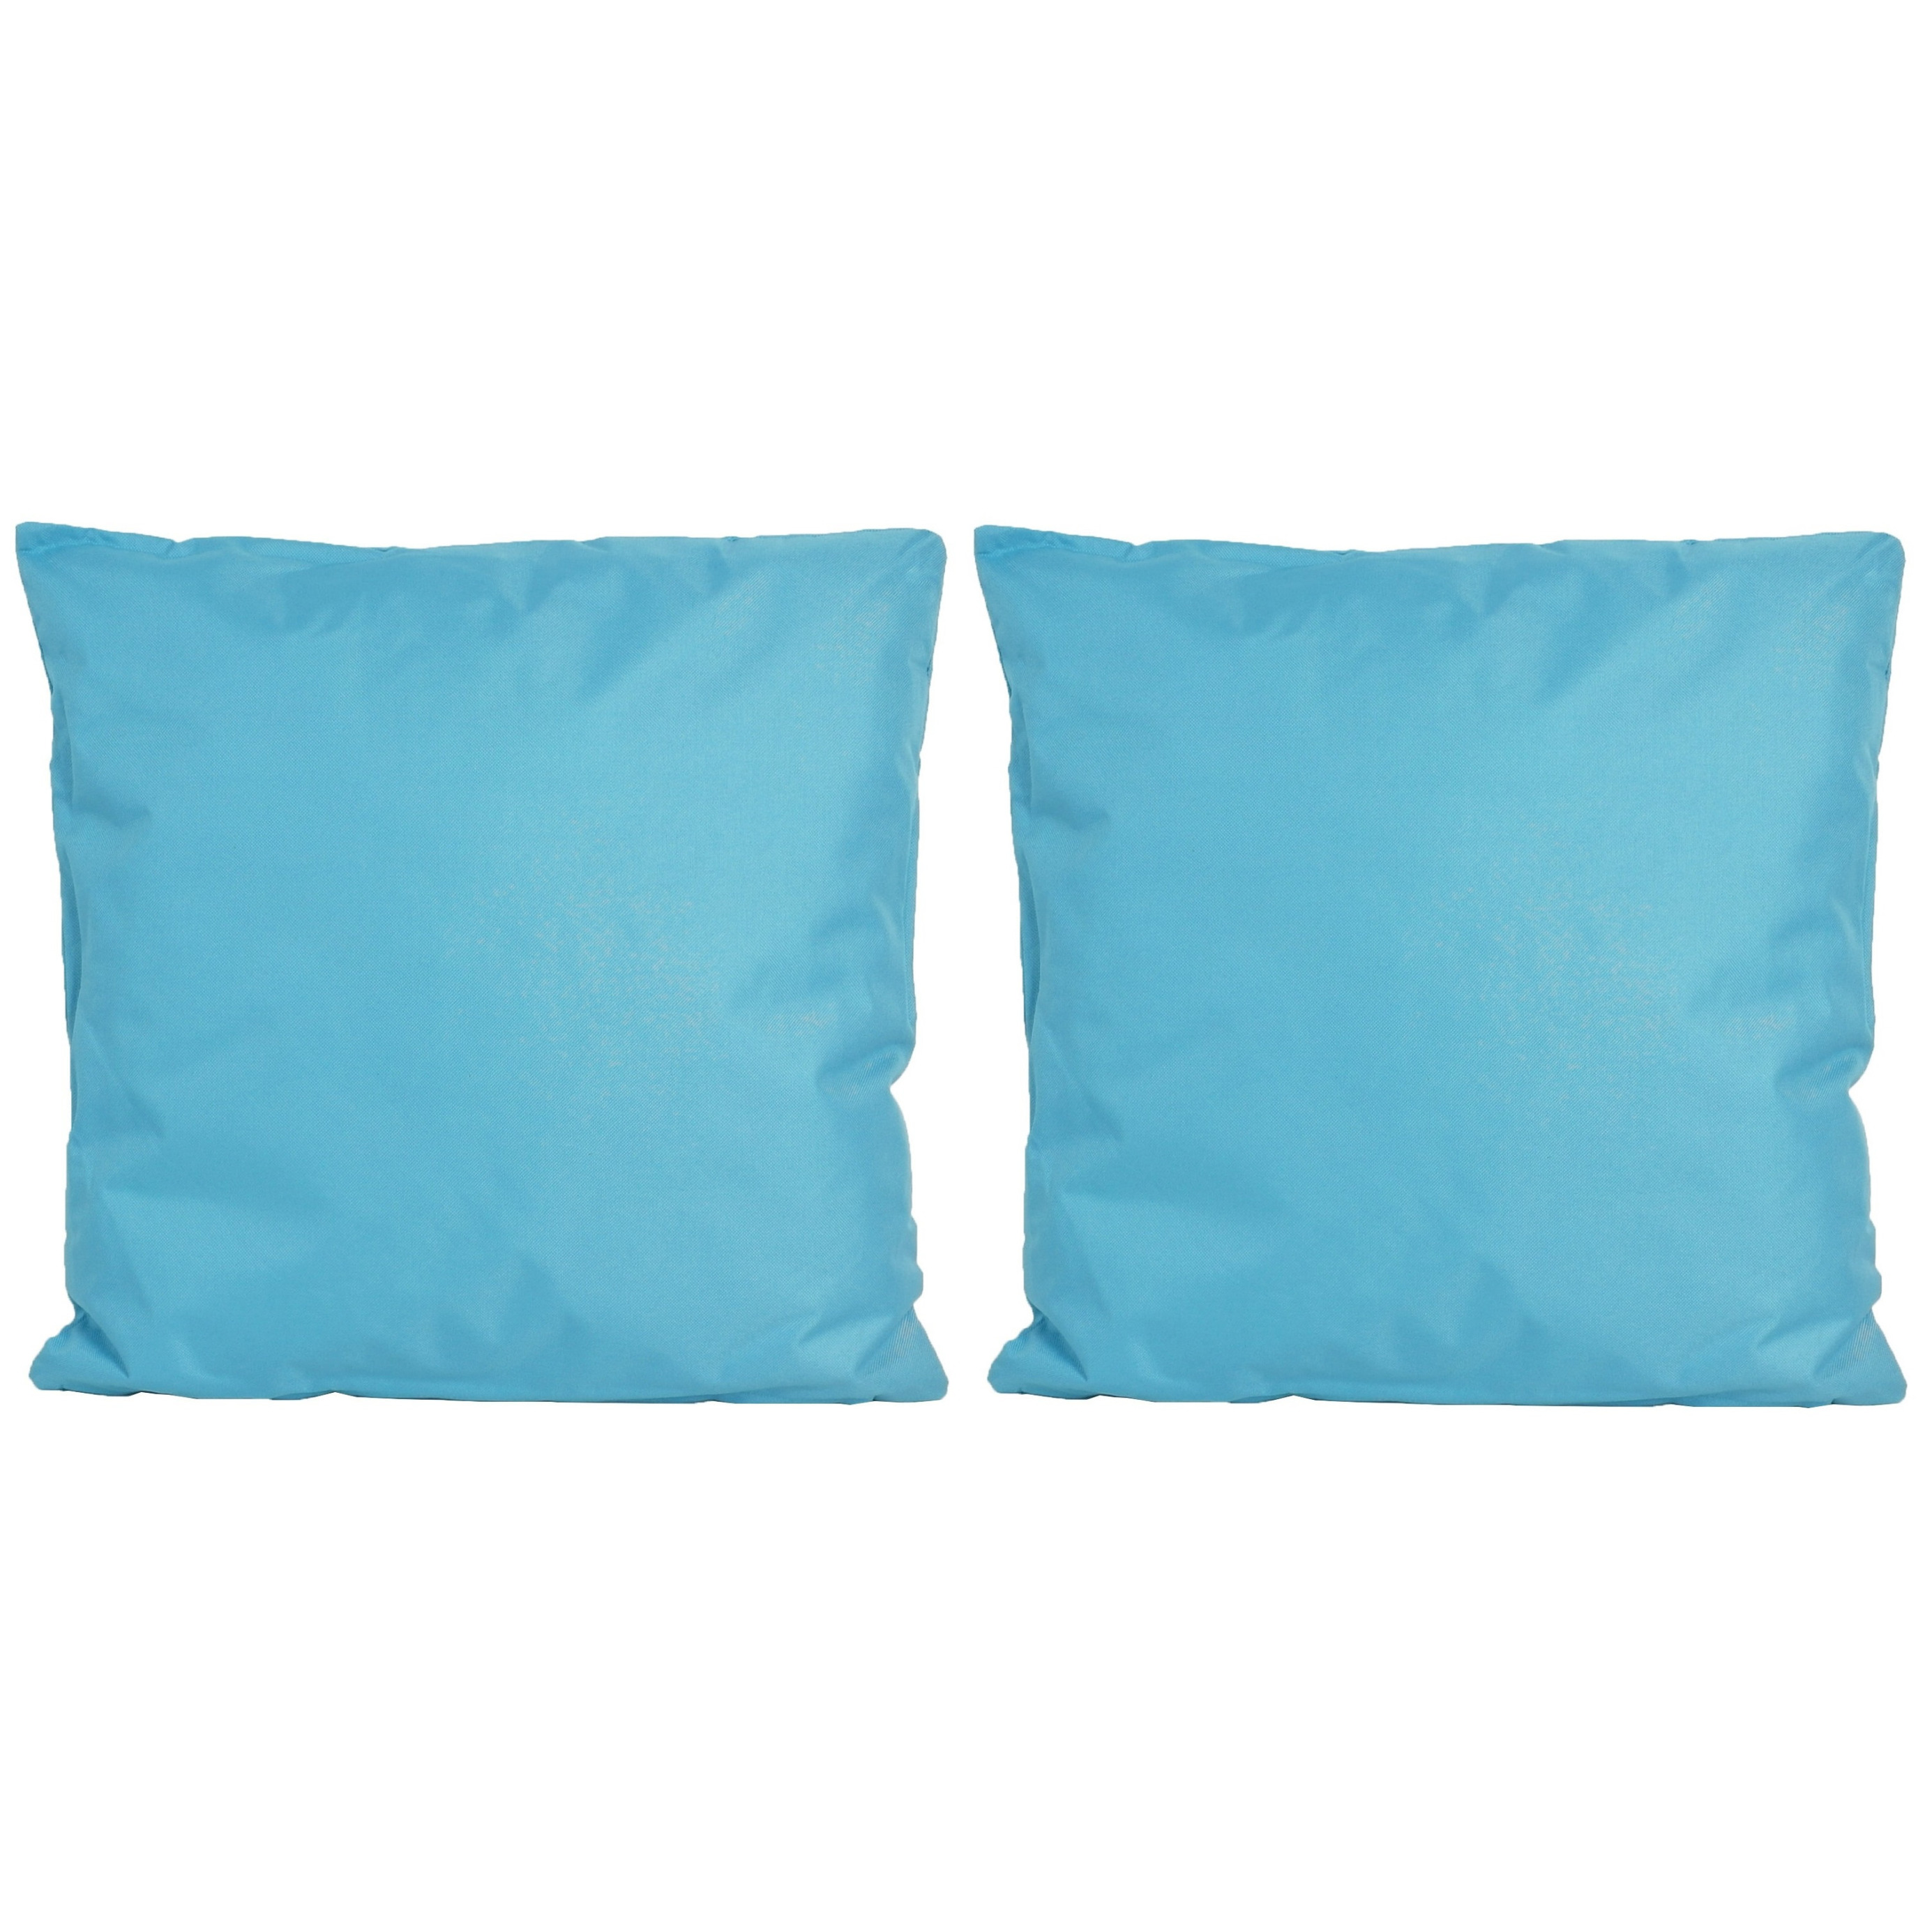 6x Bank-sier kussens voor binnen en buiten in de kleur lichtblauw 45 x 45 cm